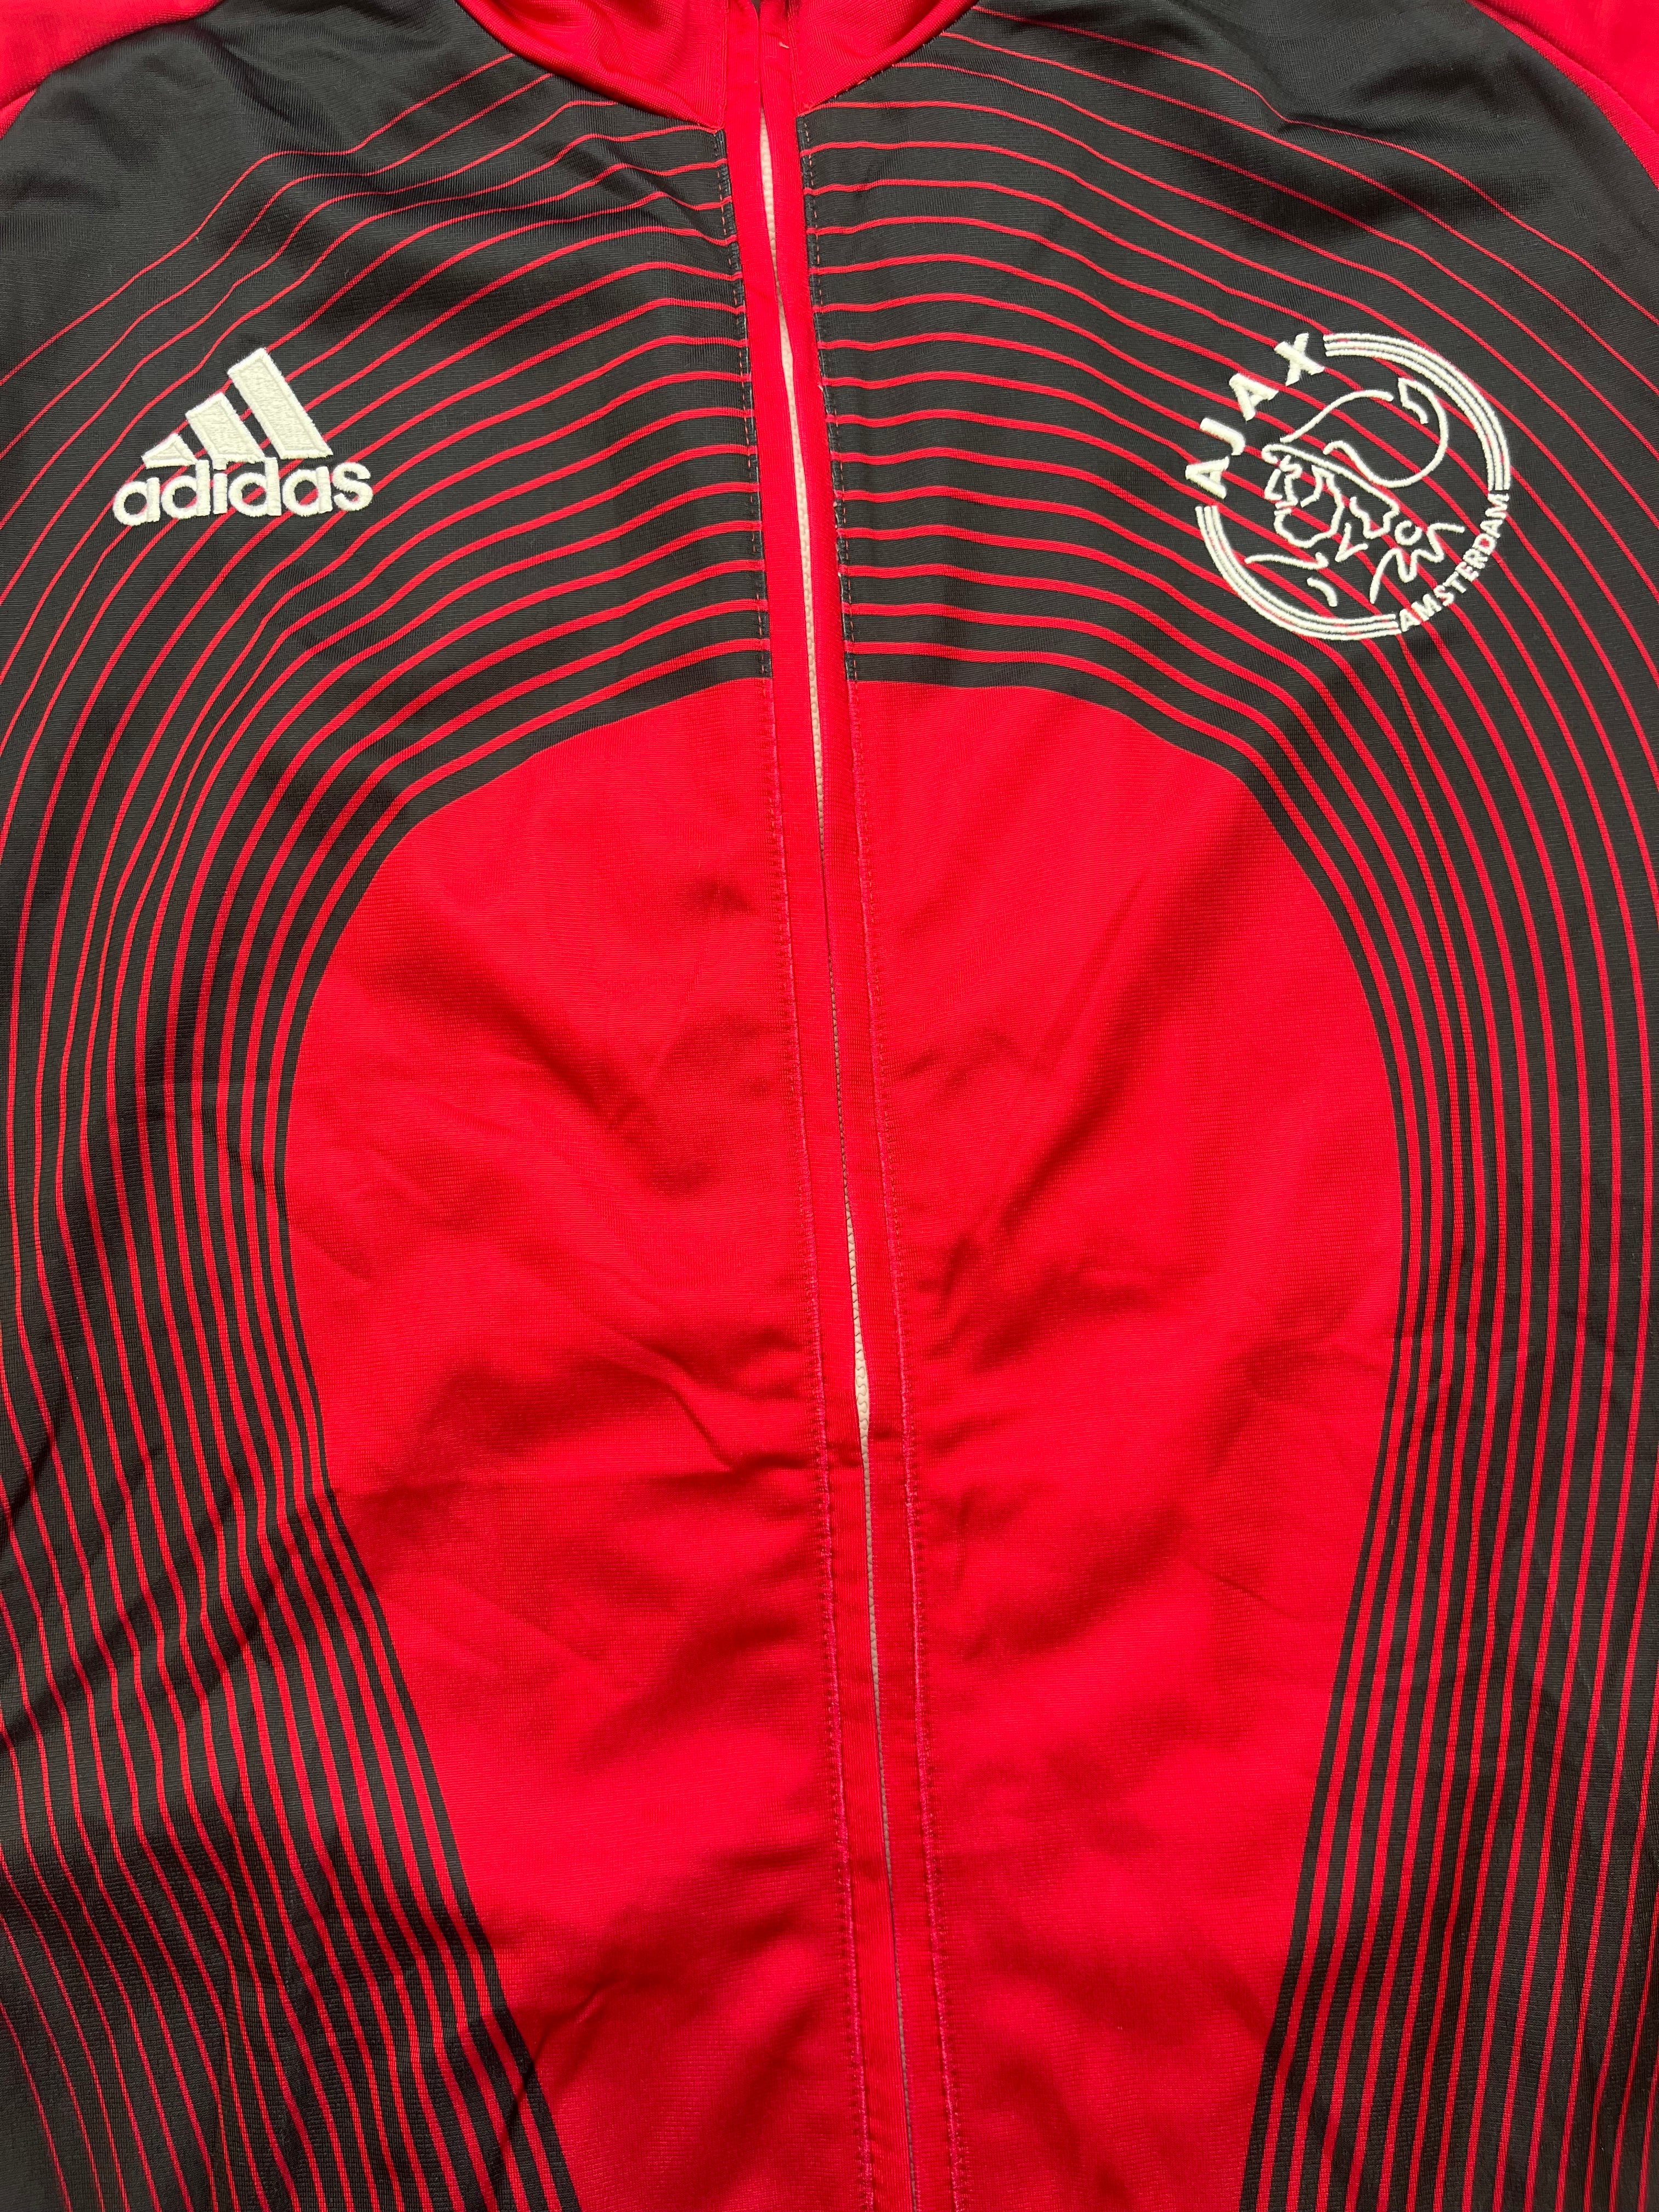 2005/06 Ajax Training Jacket (L) 9/10